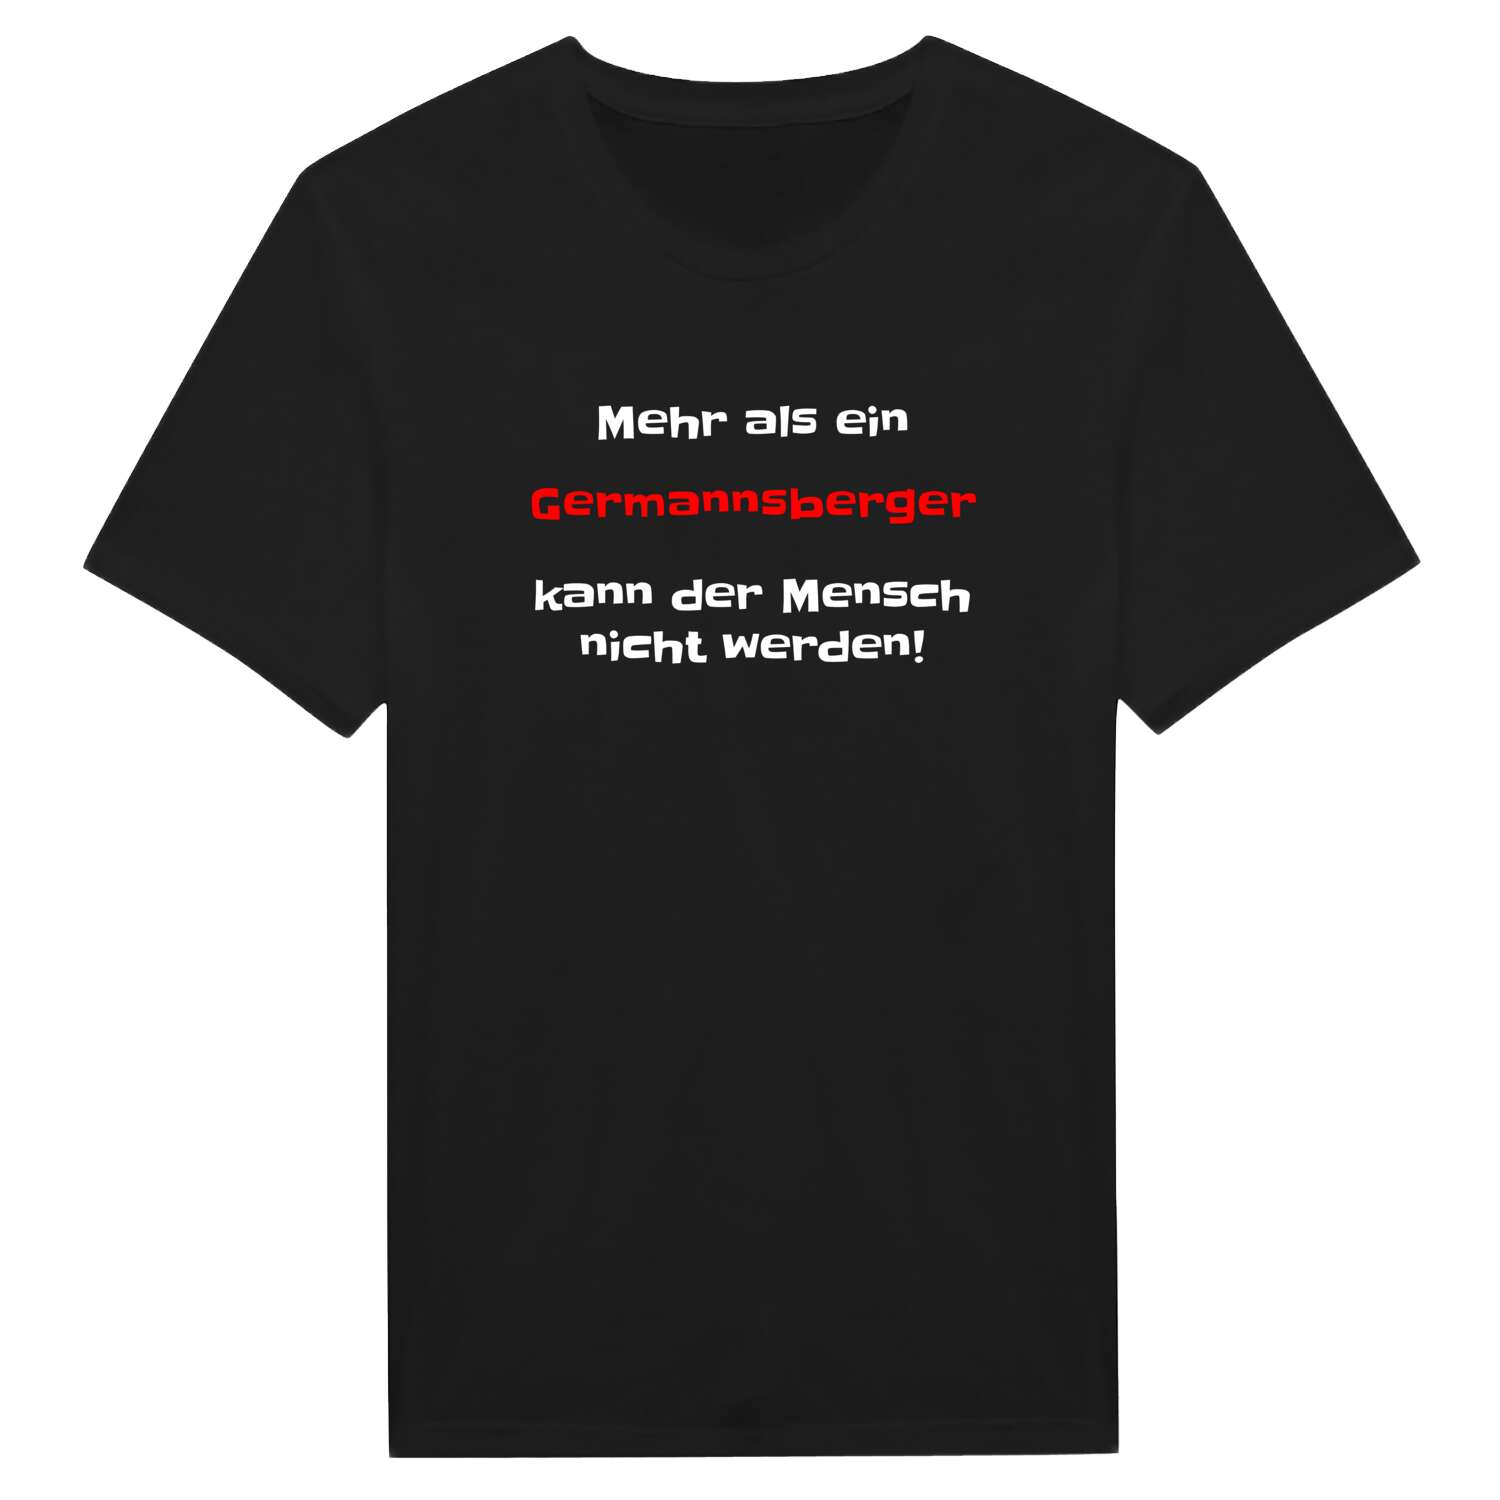 Germannsberg T-Shirt »Mehr als ein«